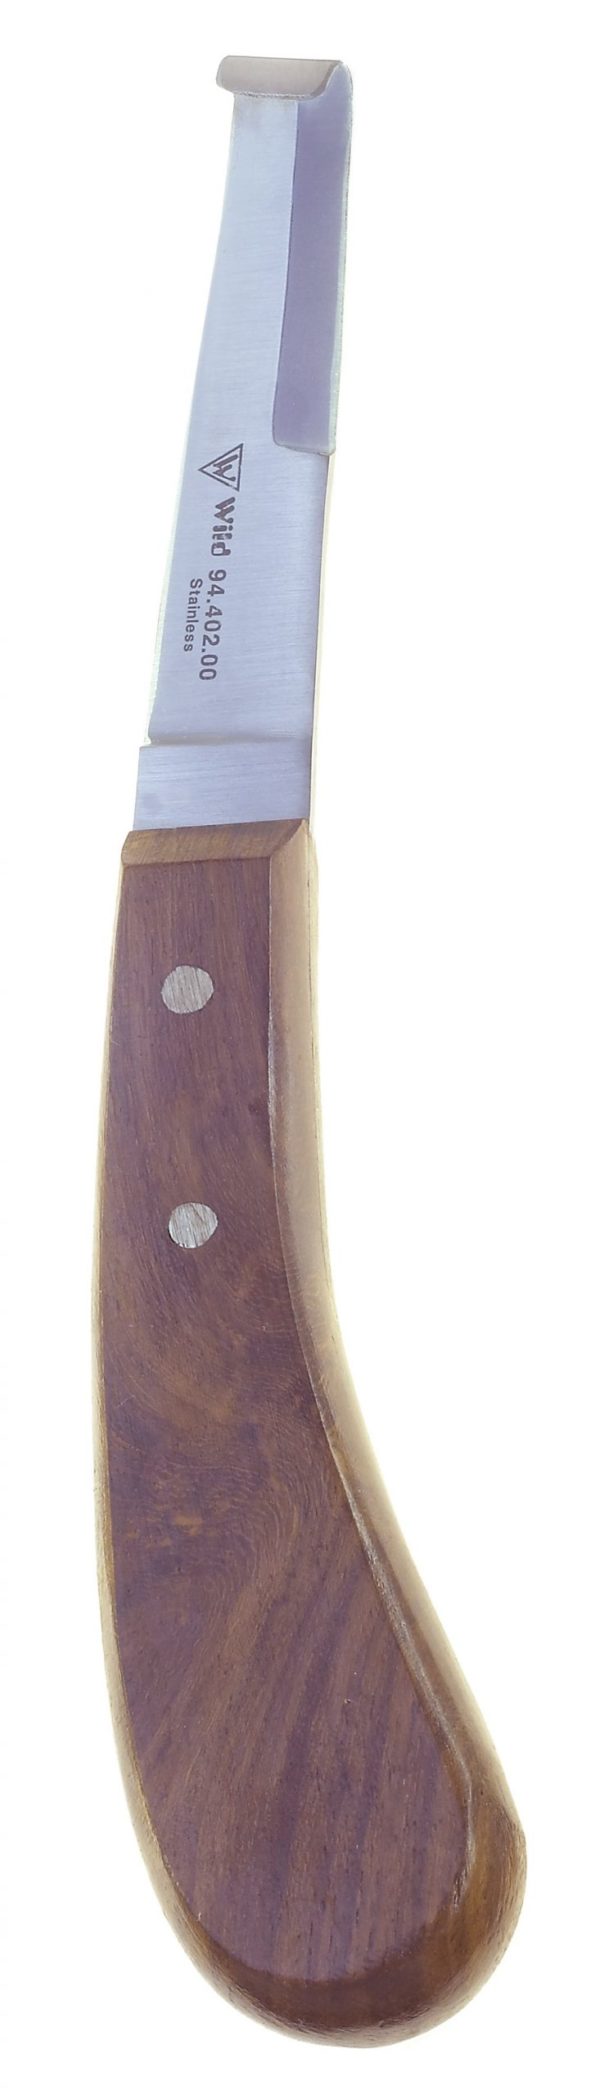 Hufmesser mit Holzgriff -doppelschneidig- 94.402.00zum Preis von 17.70 zzgl. Versand Hersteller : Heiko Wild